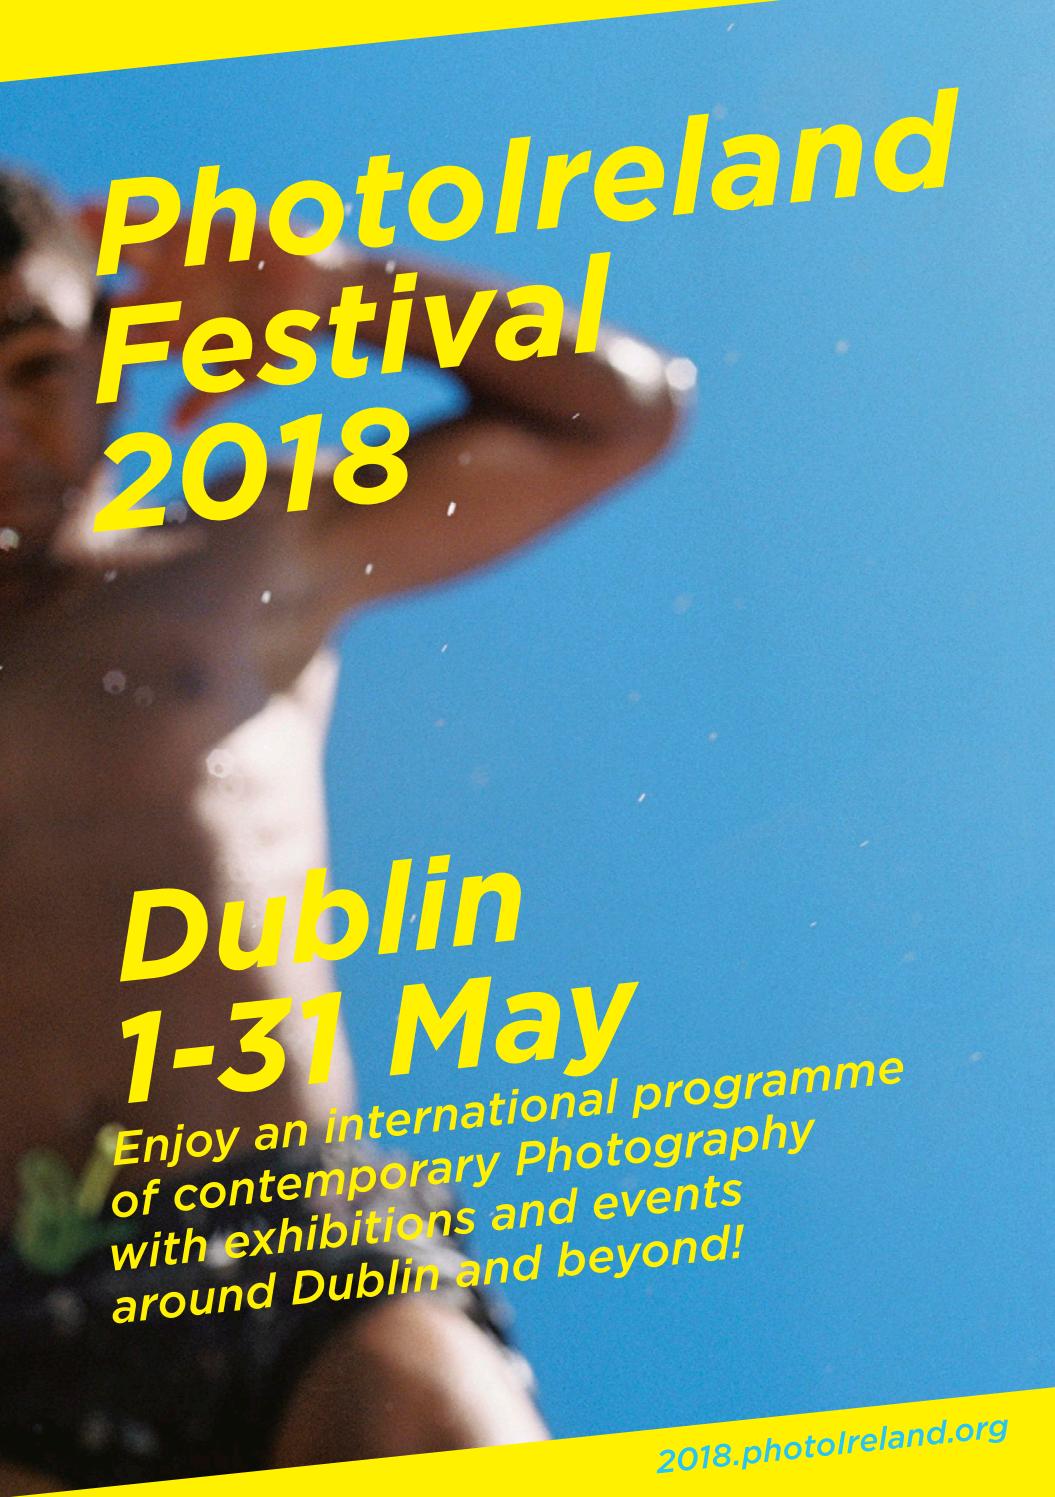 PhotoIreland Festival 2018 1 – 31 May